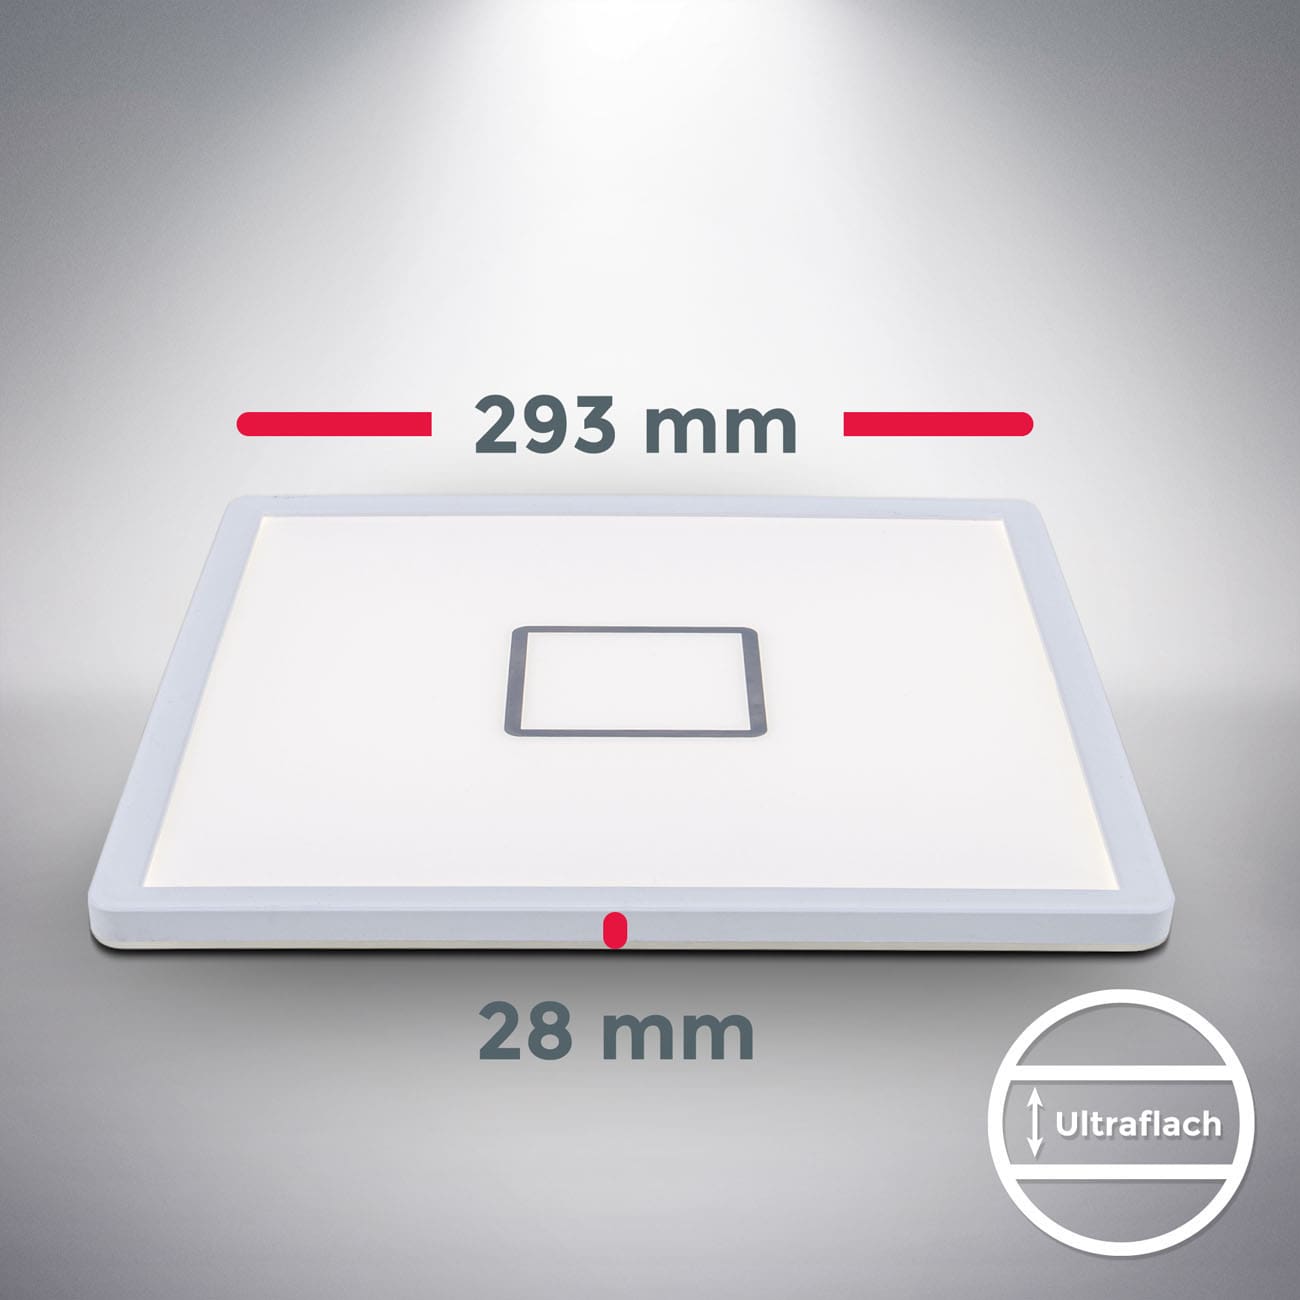 LED Deckenleuchte ultraflach weiß-silber - 4